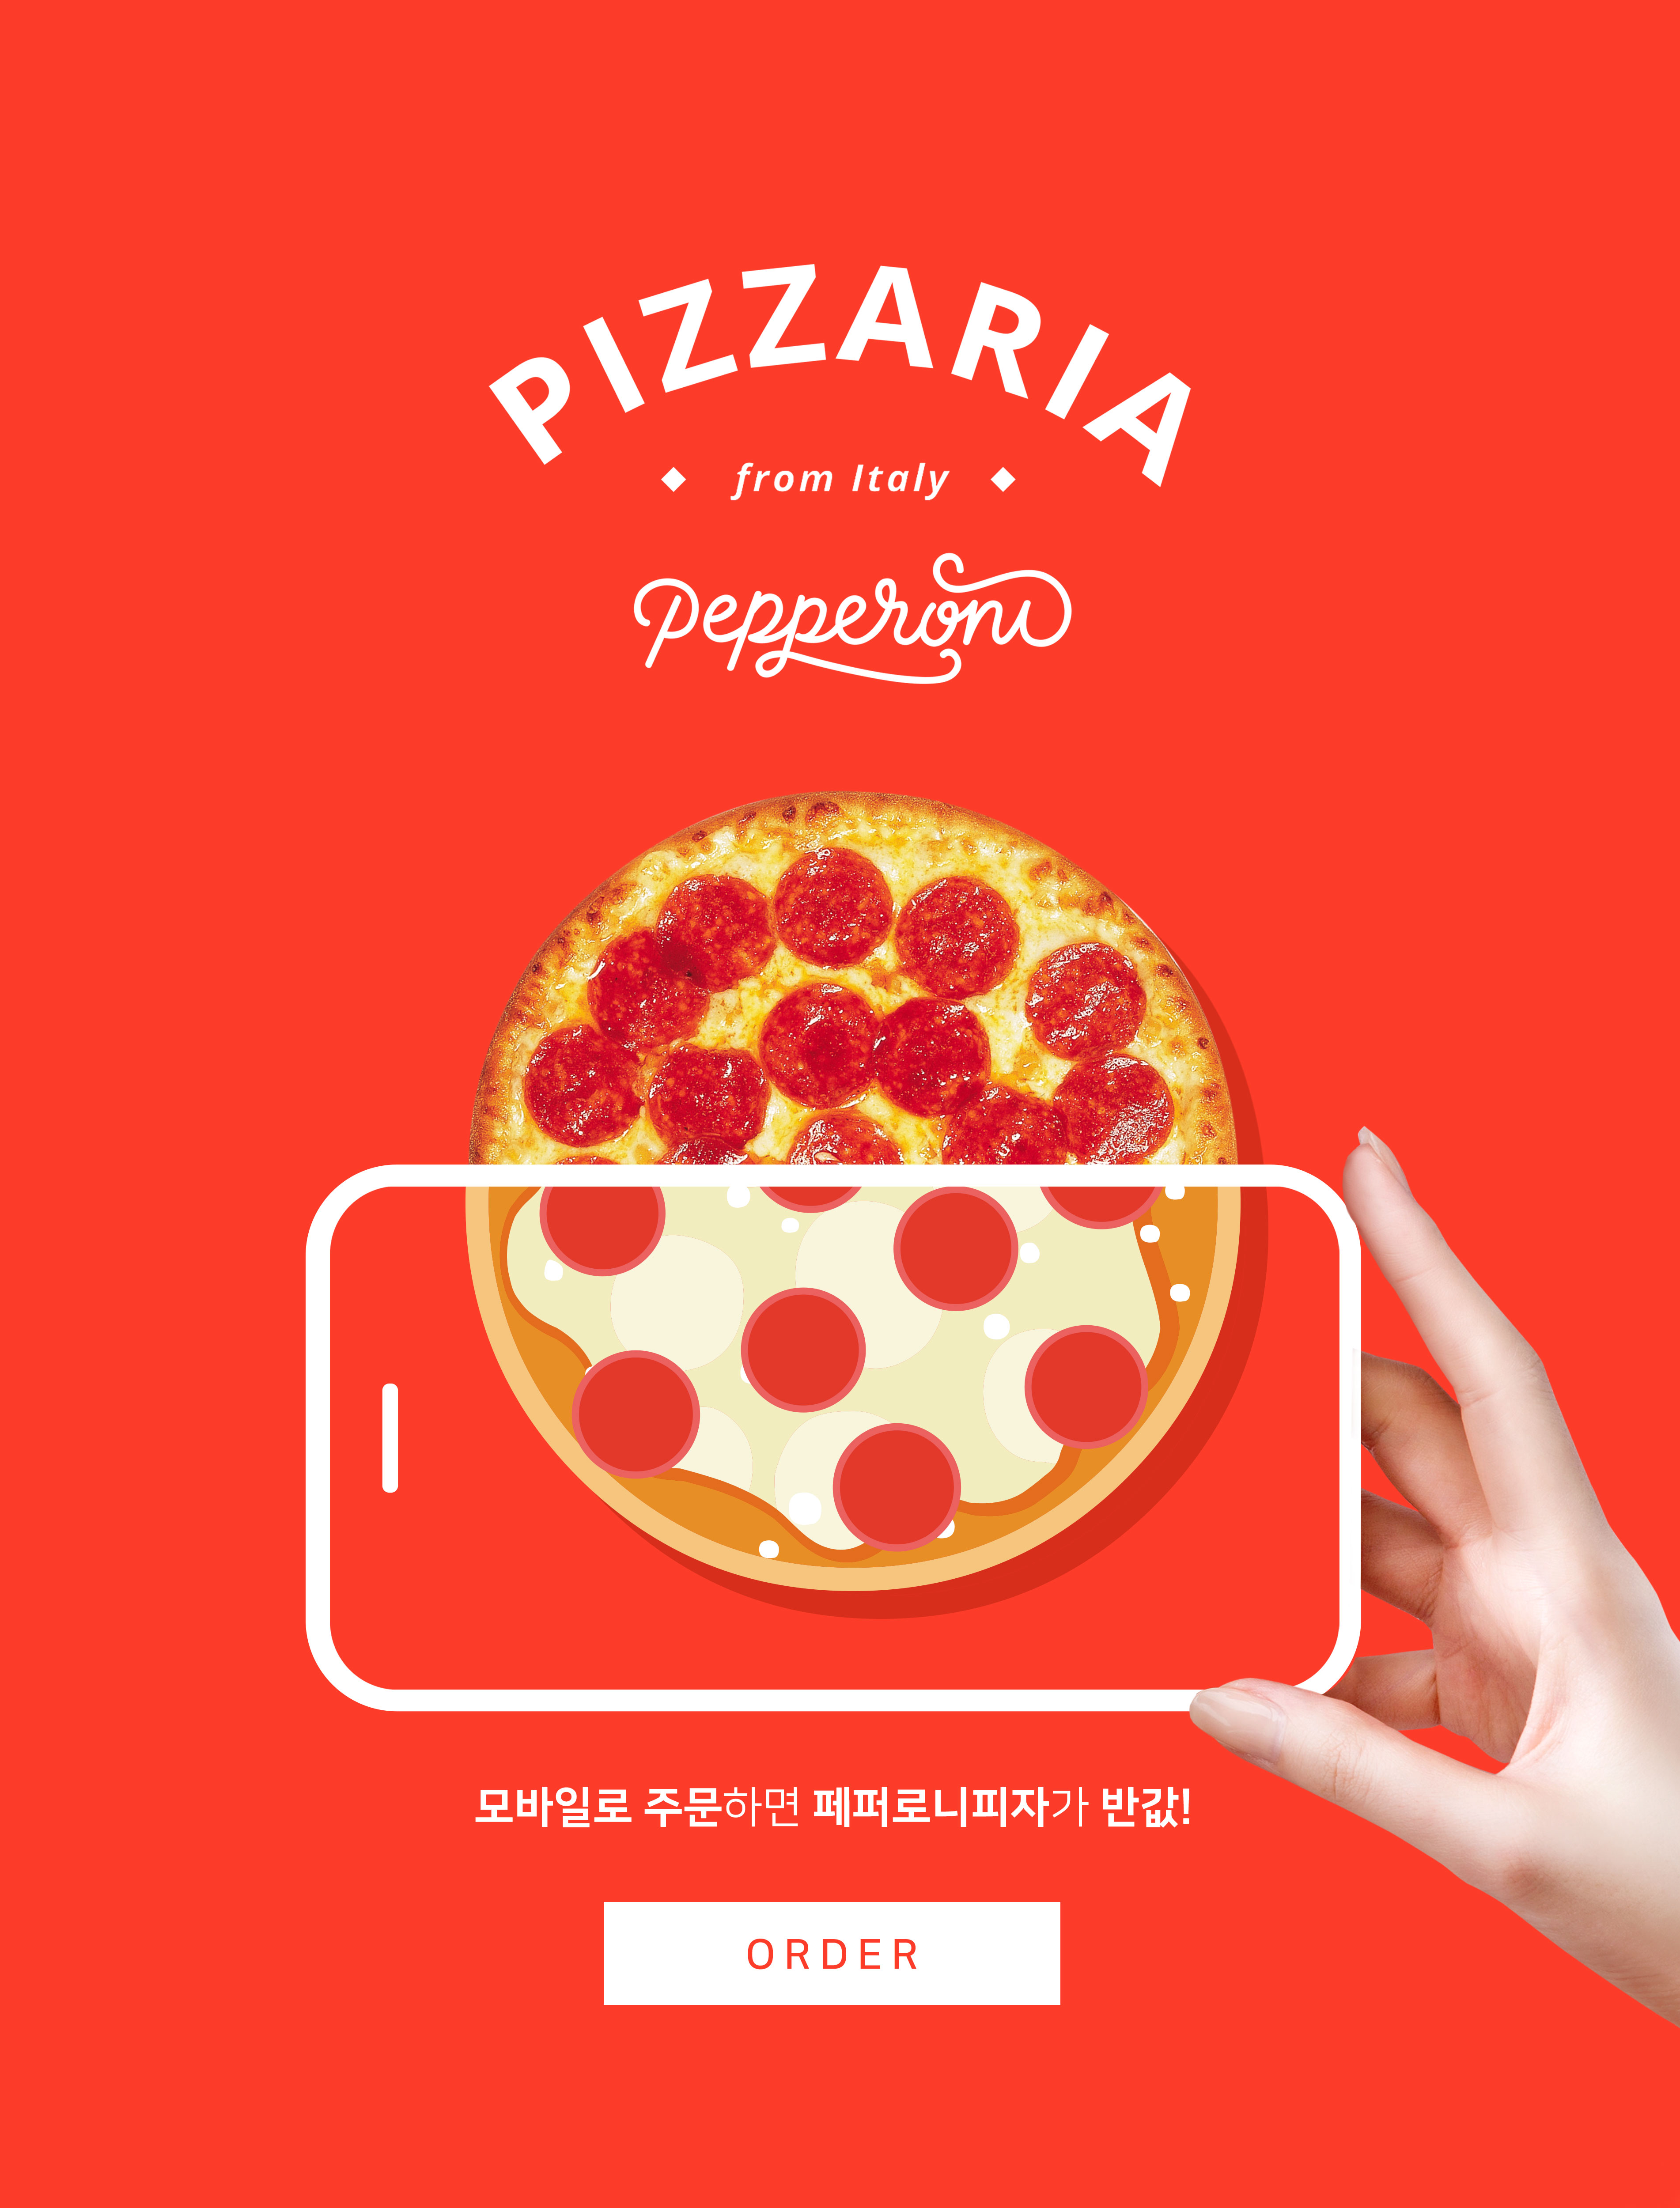 手机订购披萨半价活动宣传海报PSD素材大洋岛精选素材插图